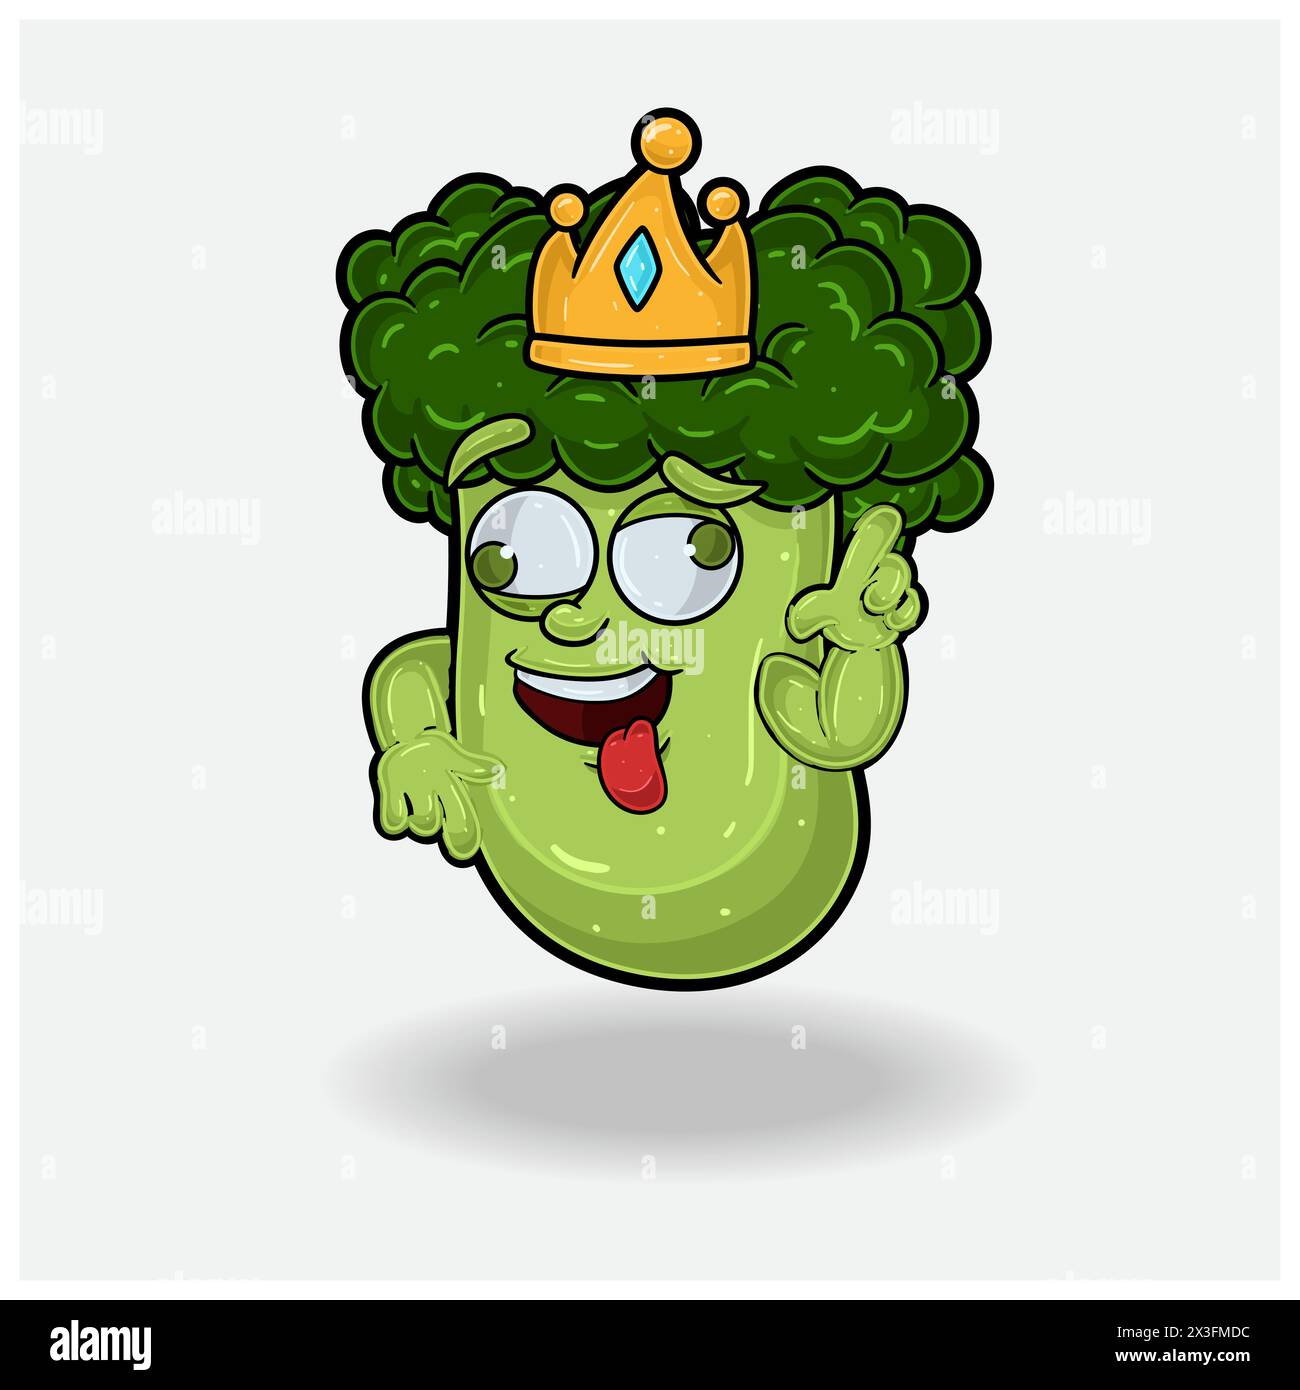 Broccoli Mascot personaggio Cartoon con espressione pazza. Illustrazioni vettoriali Illustrazione Vettoriale